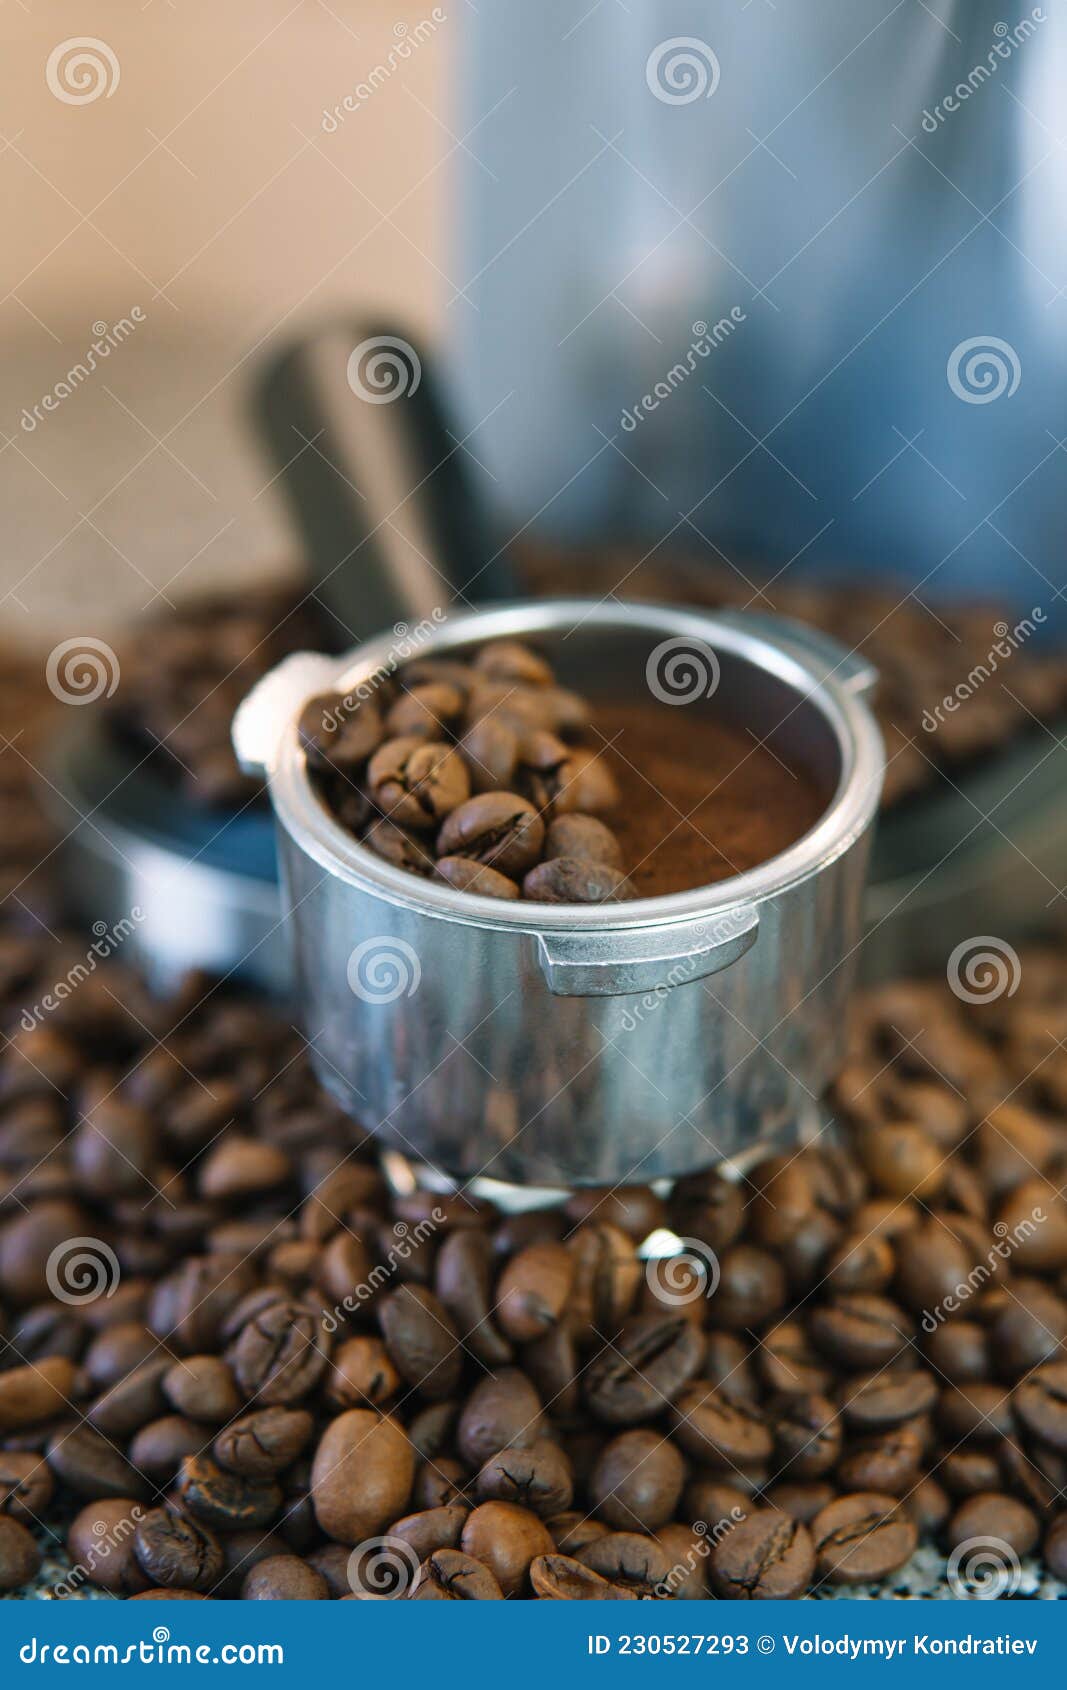 Soporte De Filtro Cafetera Espresso Con Granos De Café. En La Mitad Están  Los Granos Enteros Y En La Otra Mitad El Suelo Imagen de archivo - Imagen  de bayoneta, barra: 230527293